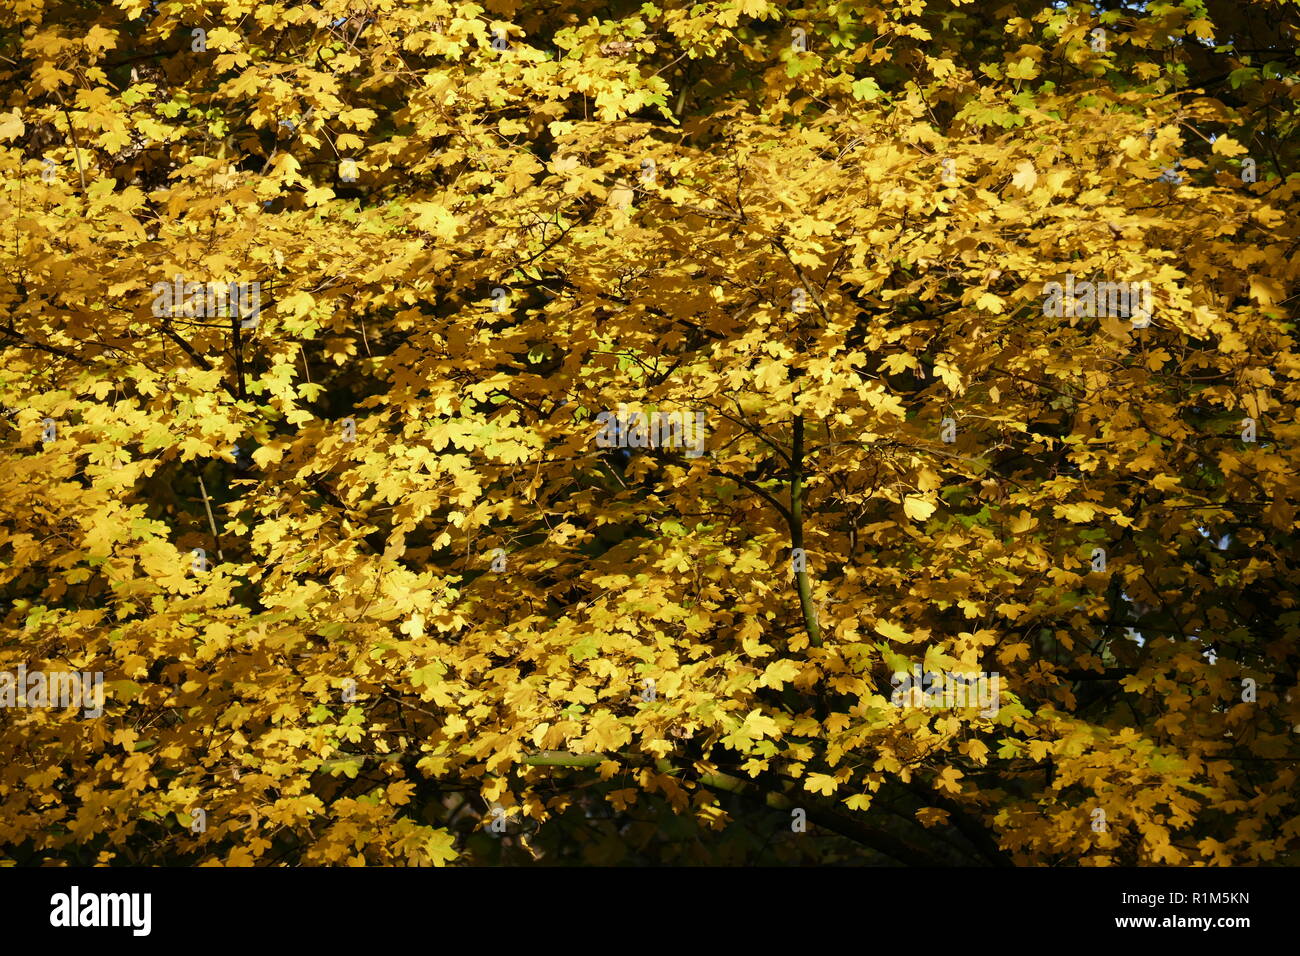 Giallo scolorito di foglie di quercia su rami, Germania, Europa mi gelb verfärbte Eichenblätter un Ästen, Deutschland, Europa ho Foto Stock